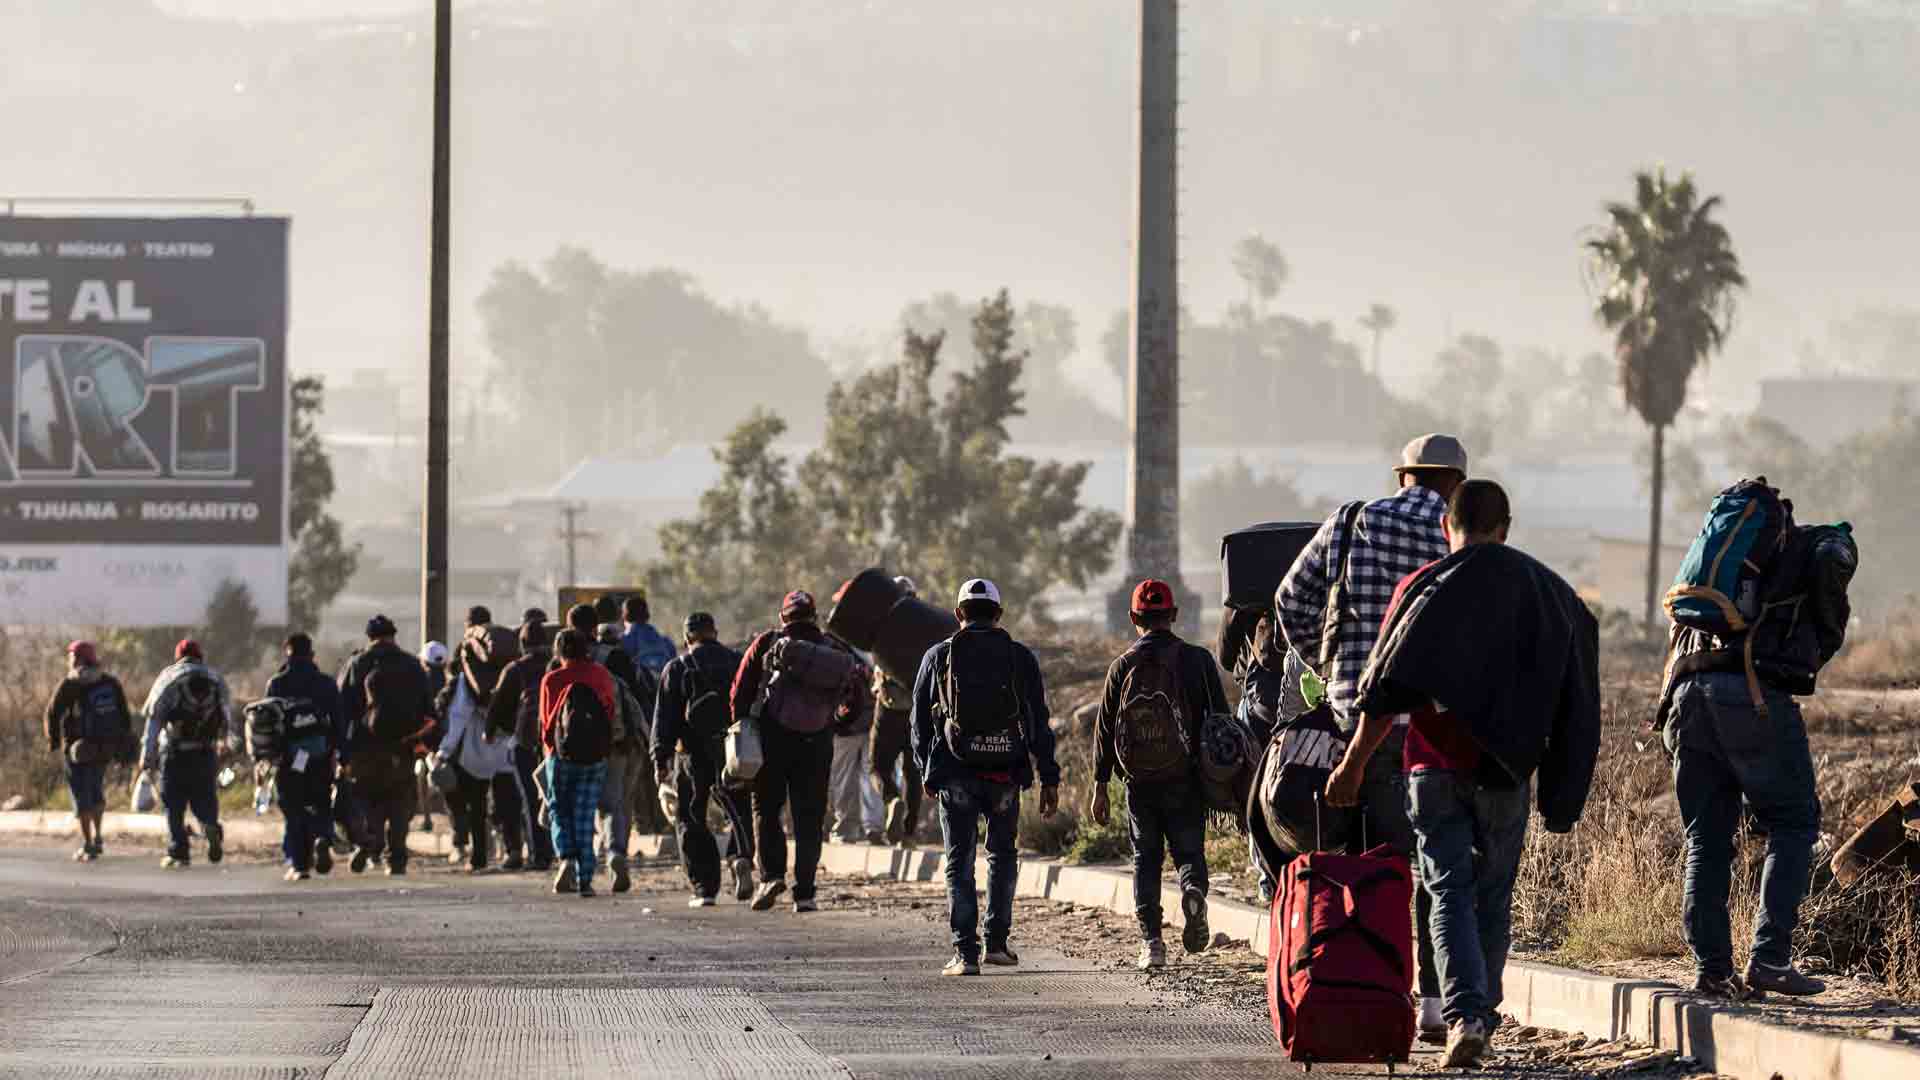 Más de 1.500 personas de la caravana llegan a Tijuana, ciudad fronteriza con EEUU